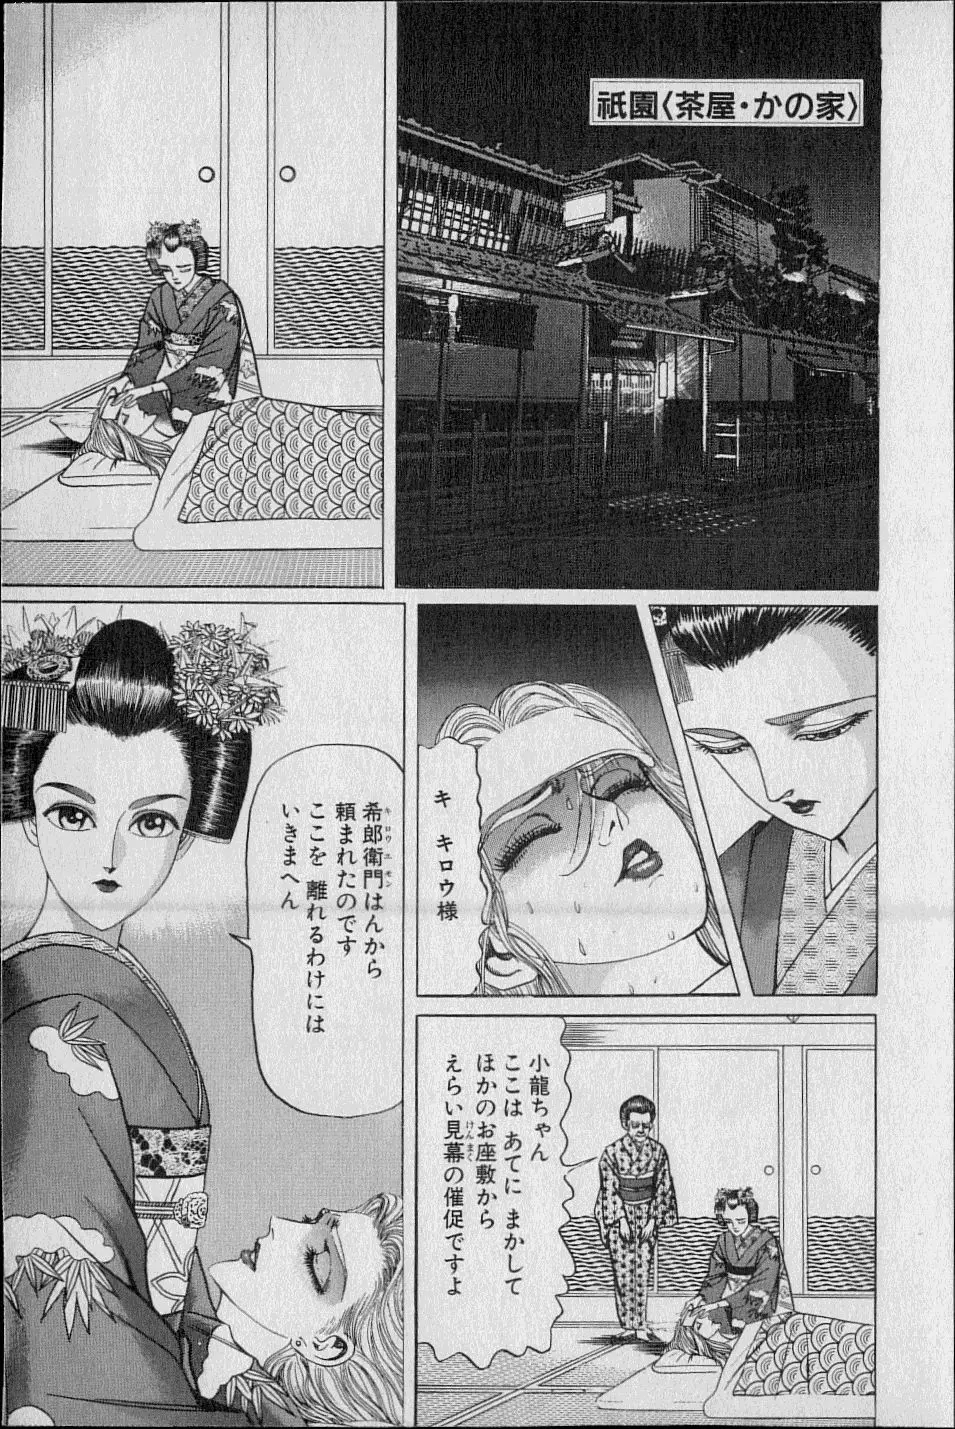 Kouryuu no Mimi Volume 02 94ページ